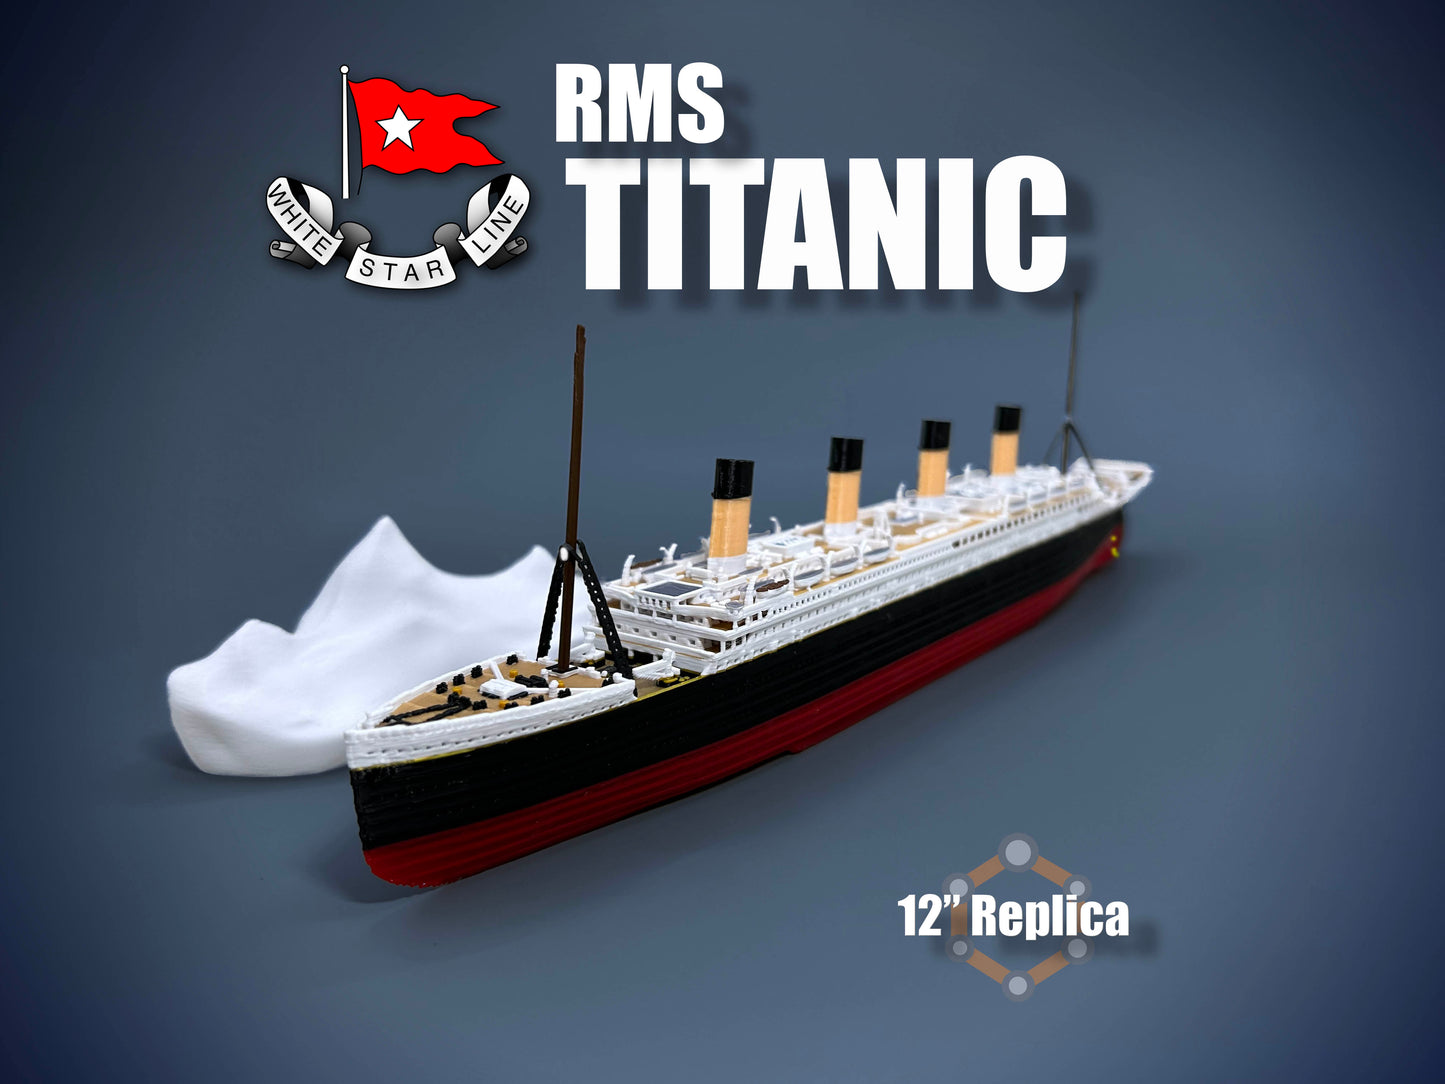 12” RMS Titanic Replica With Iceberg